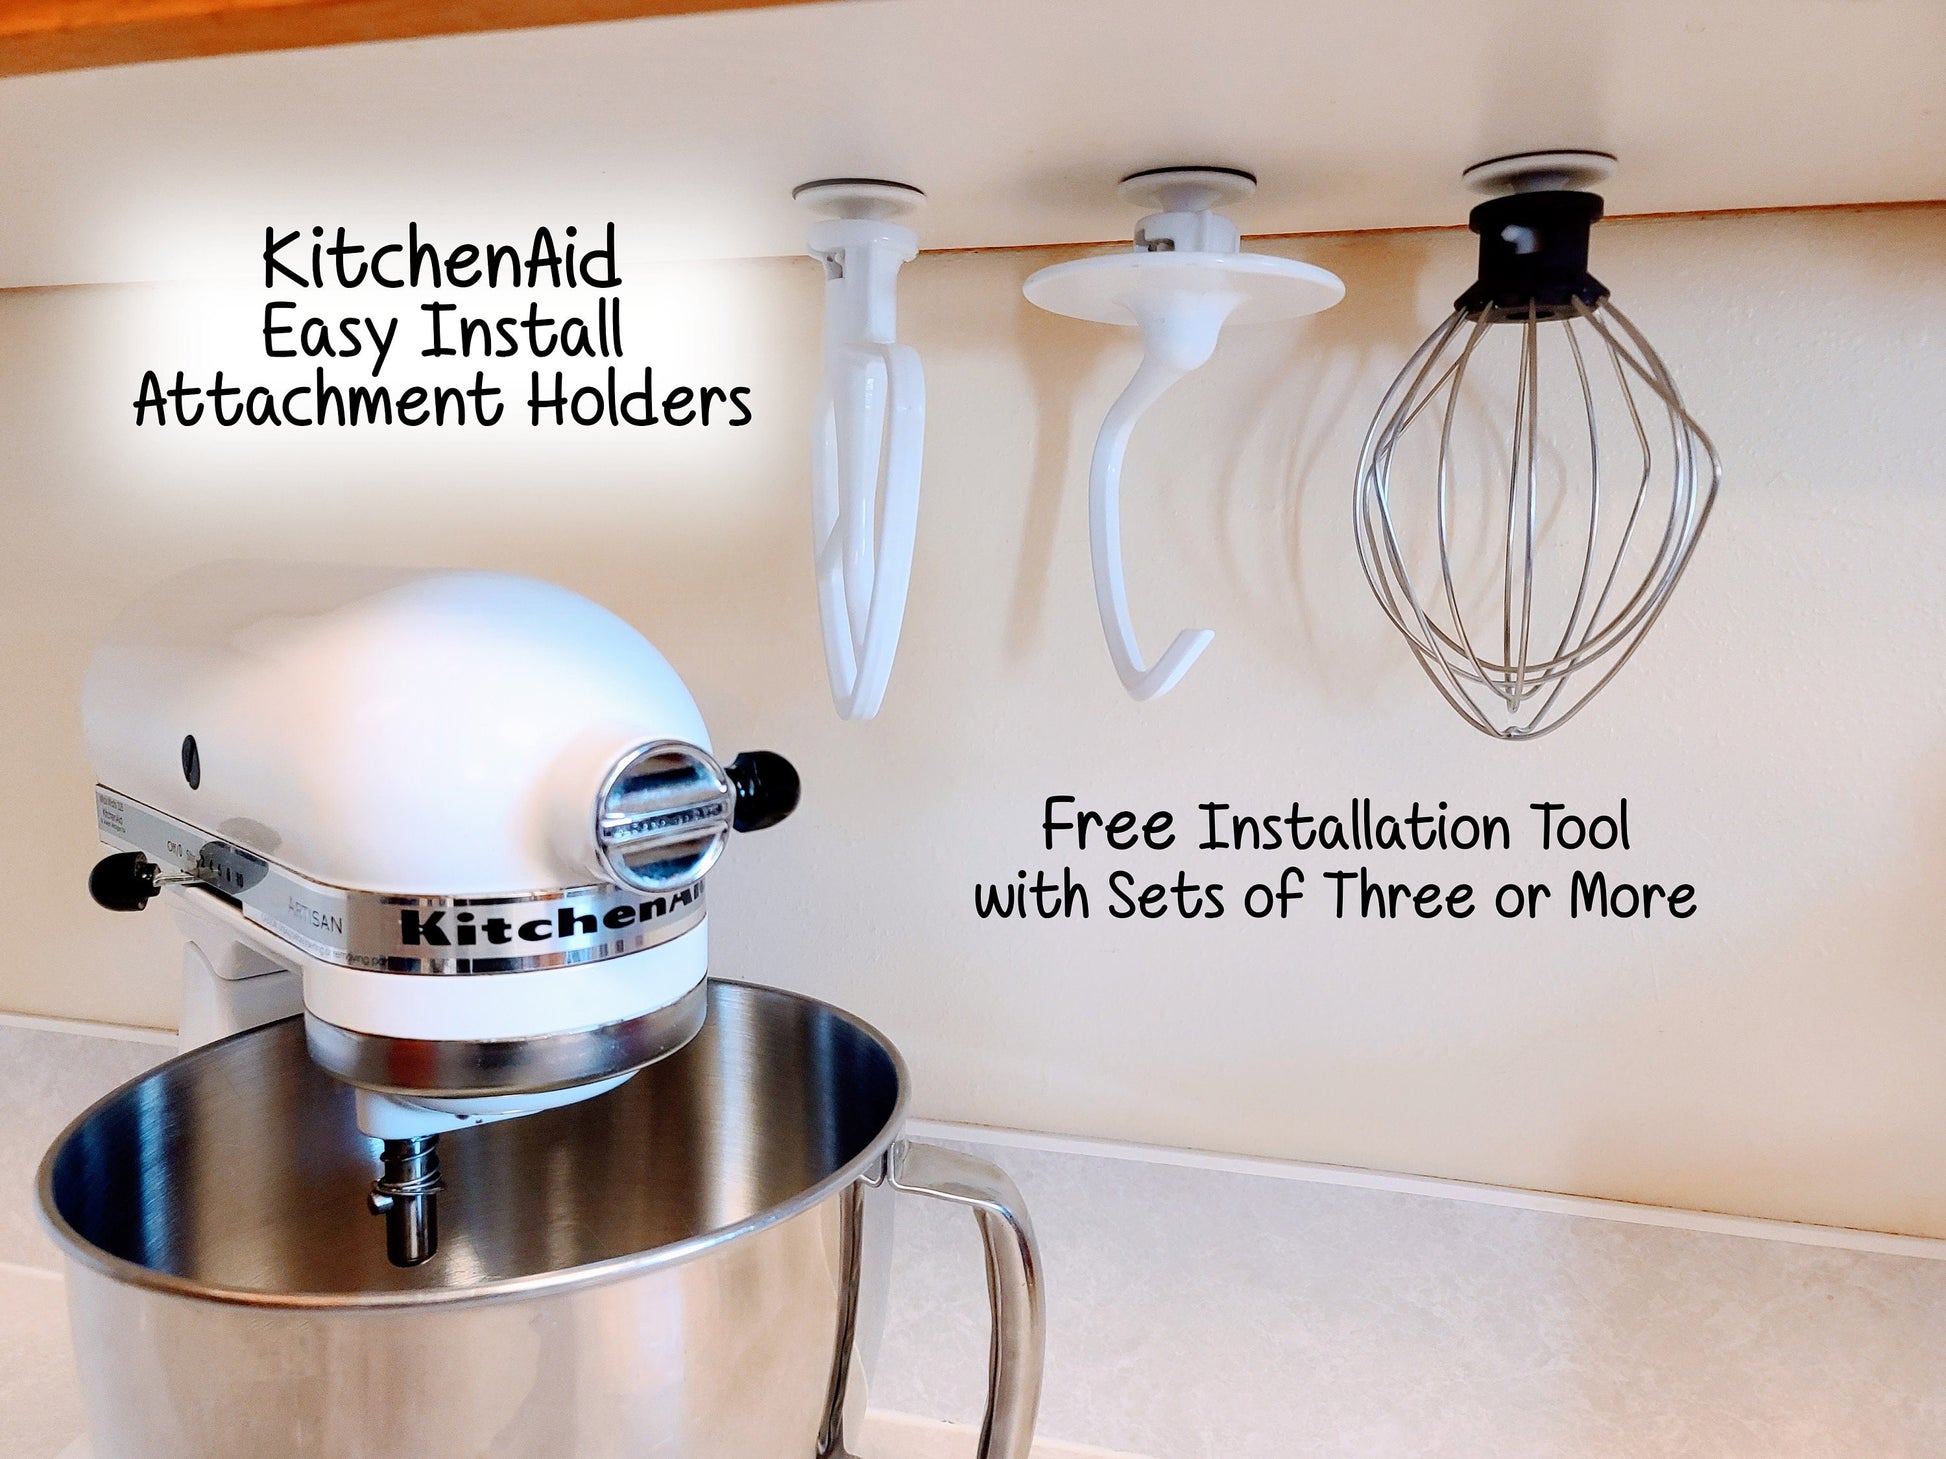 KitchenAid Mixer, Attachment Holder, Space Saver, Organizer Mount